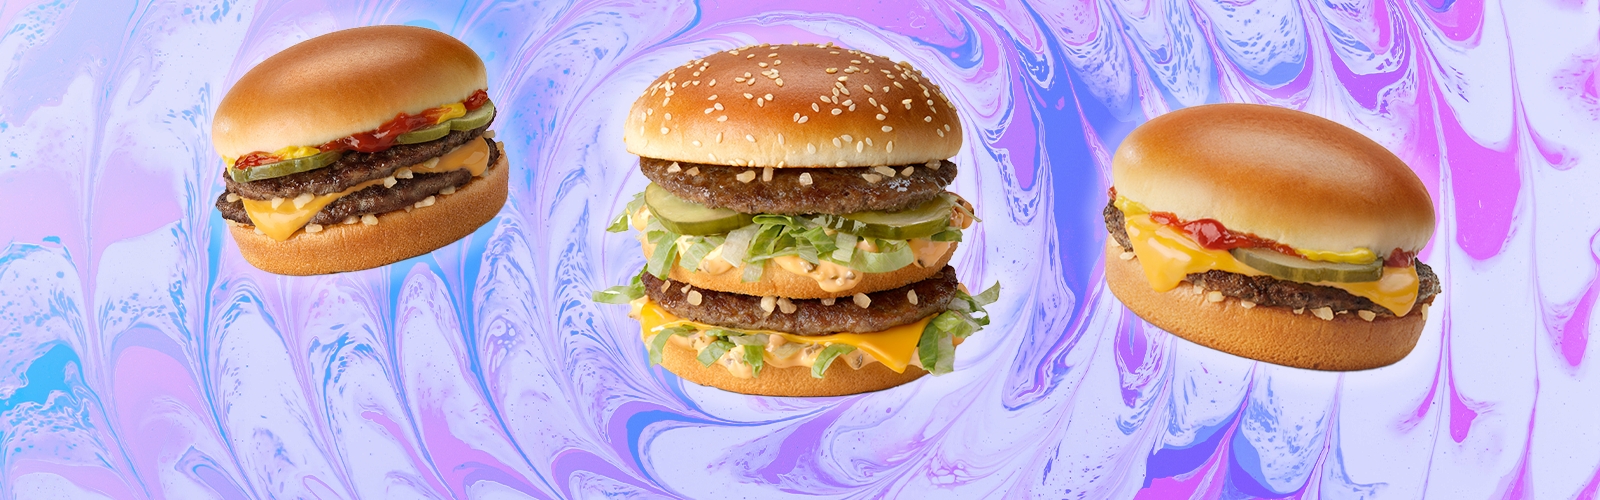 https://uproxx.com/wp-content/uploads/2023/04/Burgers.jpg?w=1600&h=500&crop=1